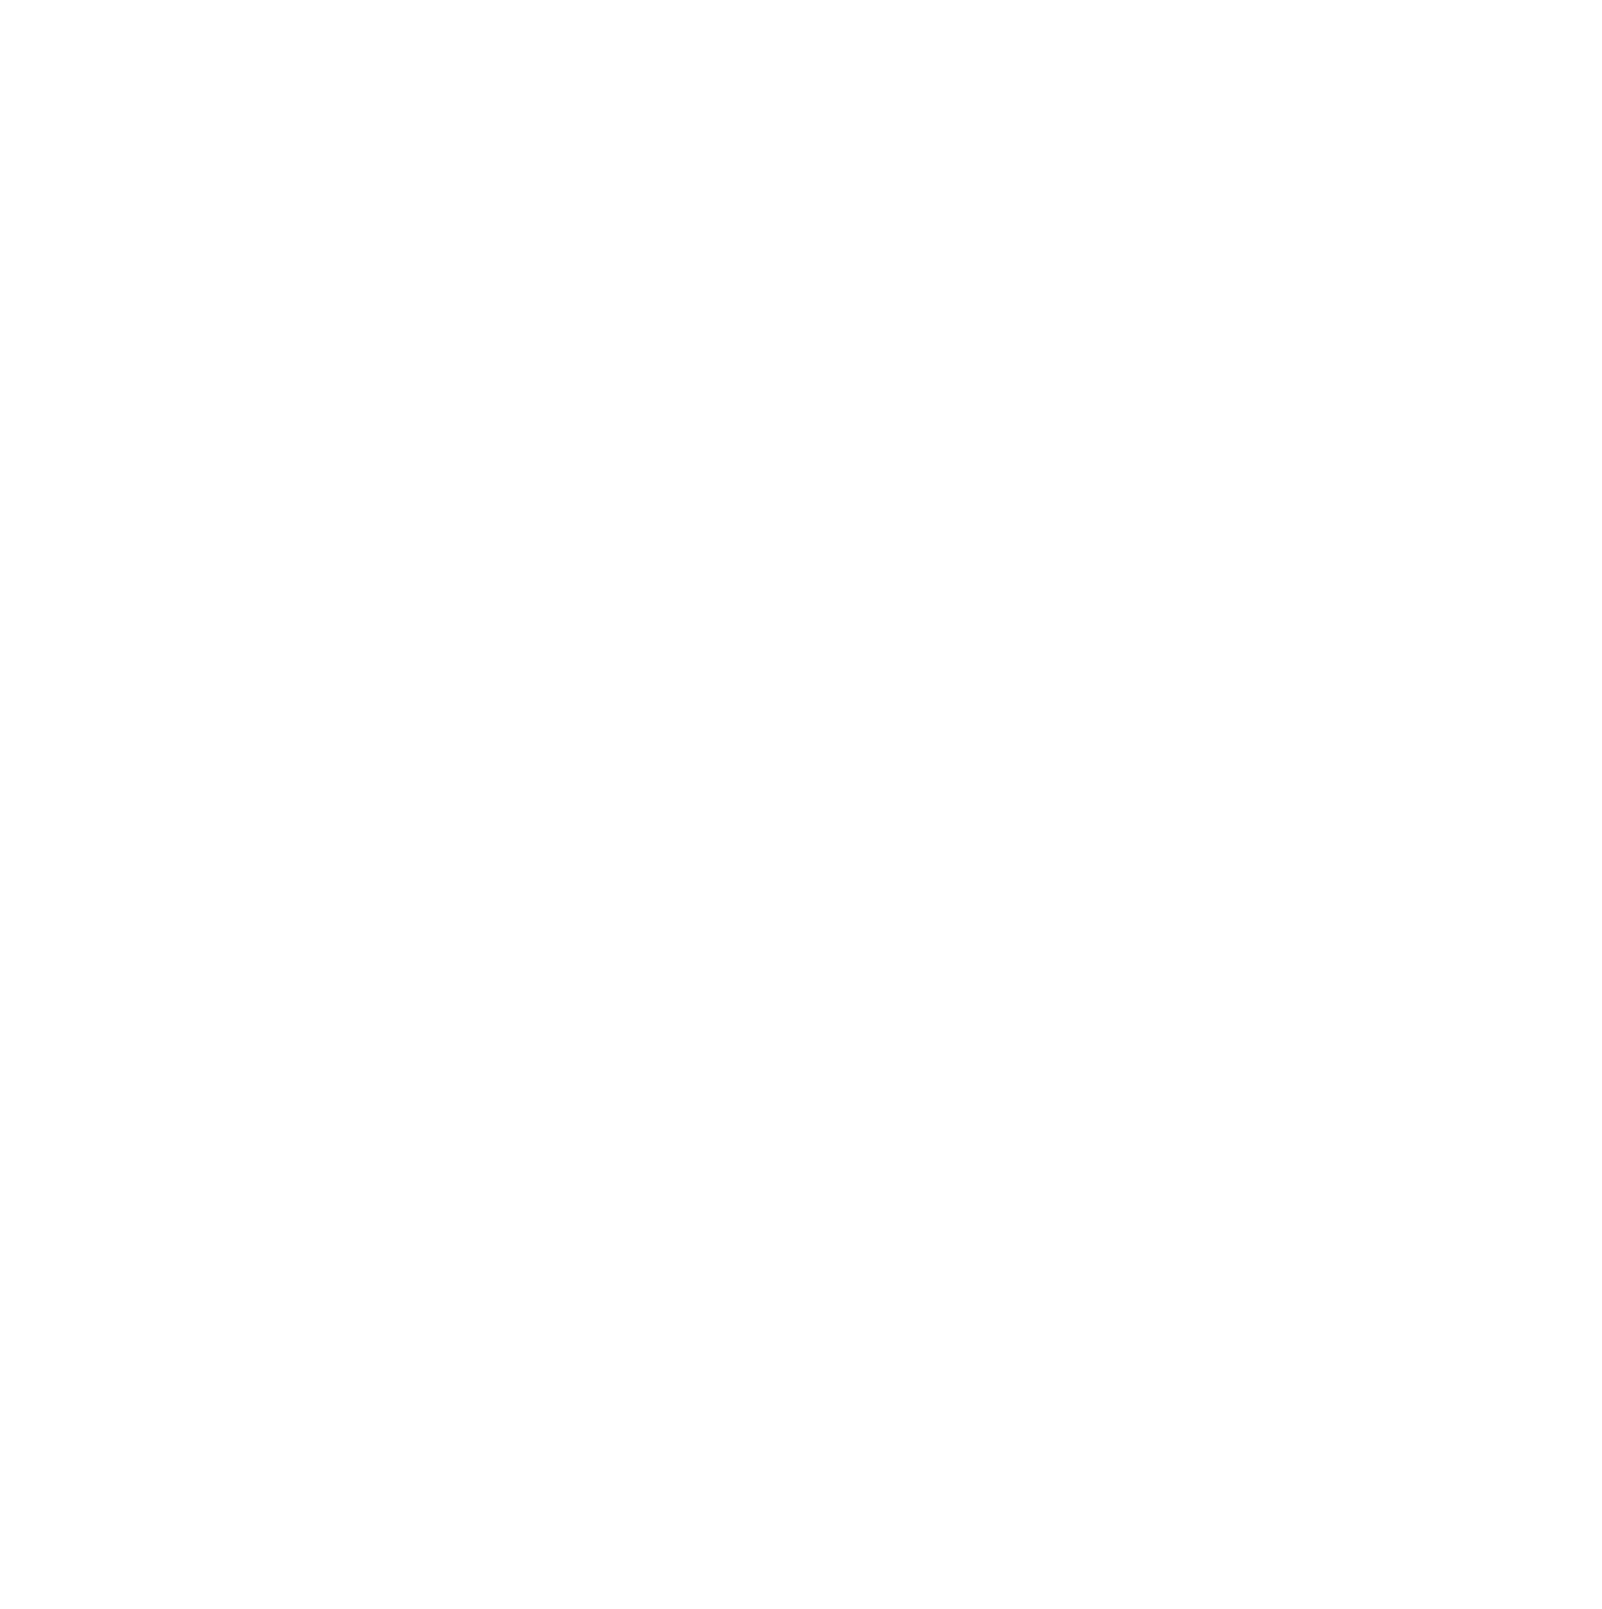 Gustav Roasting Co.